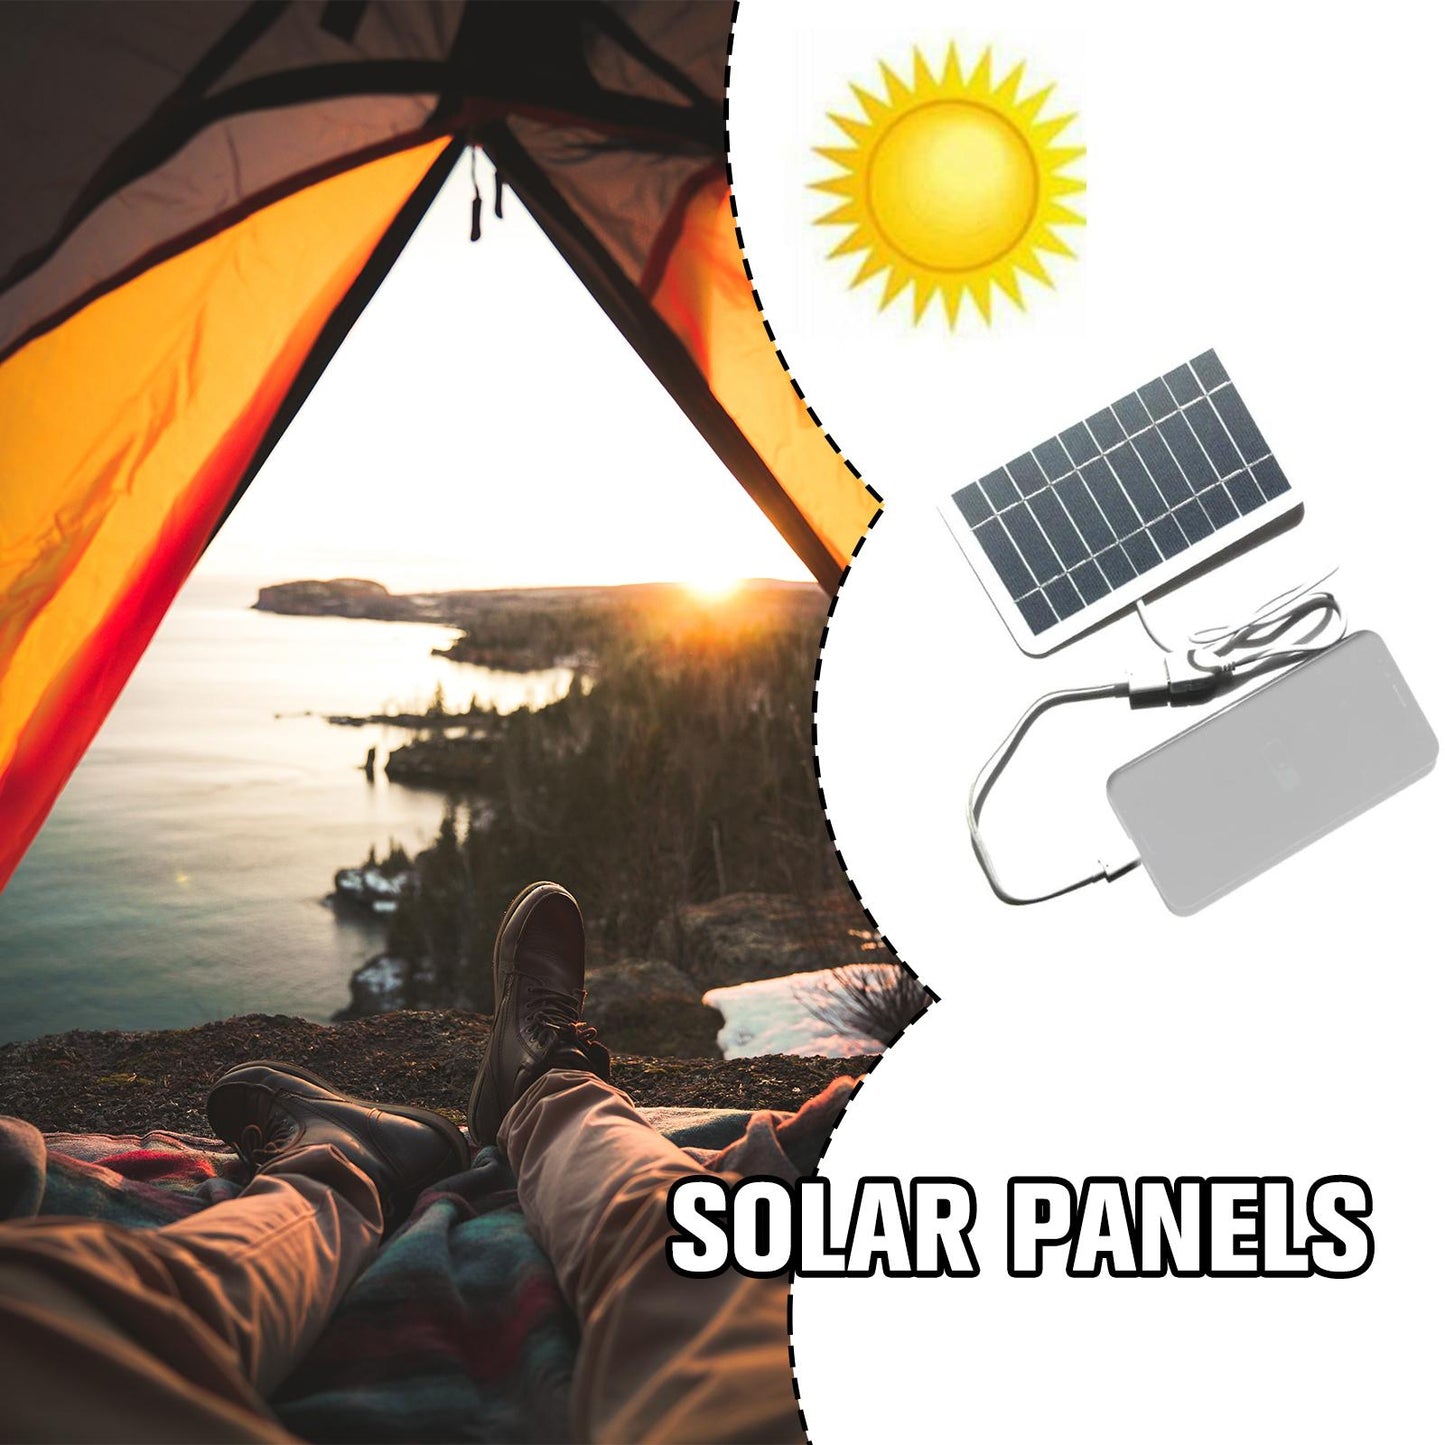 Caricatore del pannello solare USB 5V 2W 400mA Uscita pannello solare portatile Sistema solare portatile esterno USB per caricabatterie per telefoni cellulari